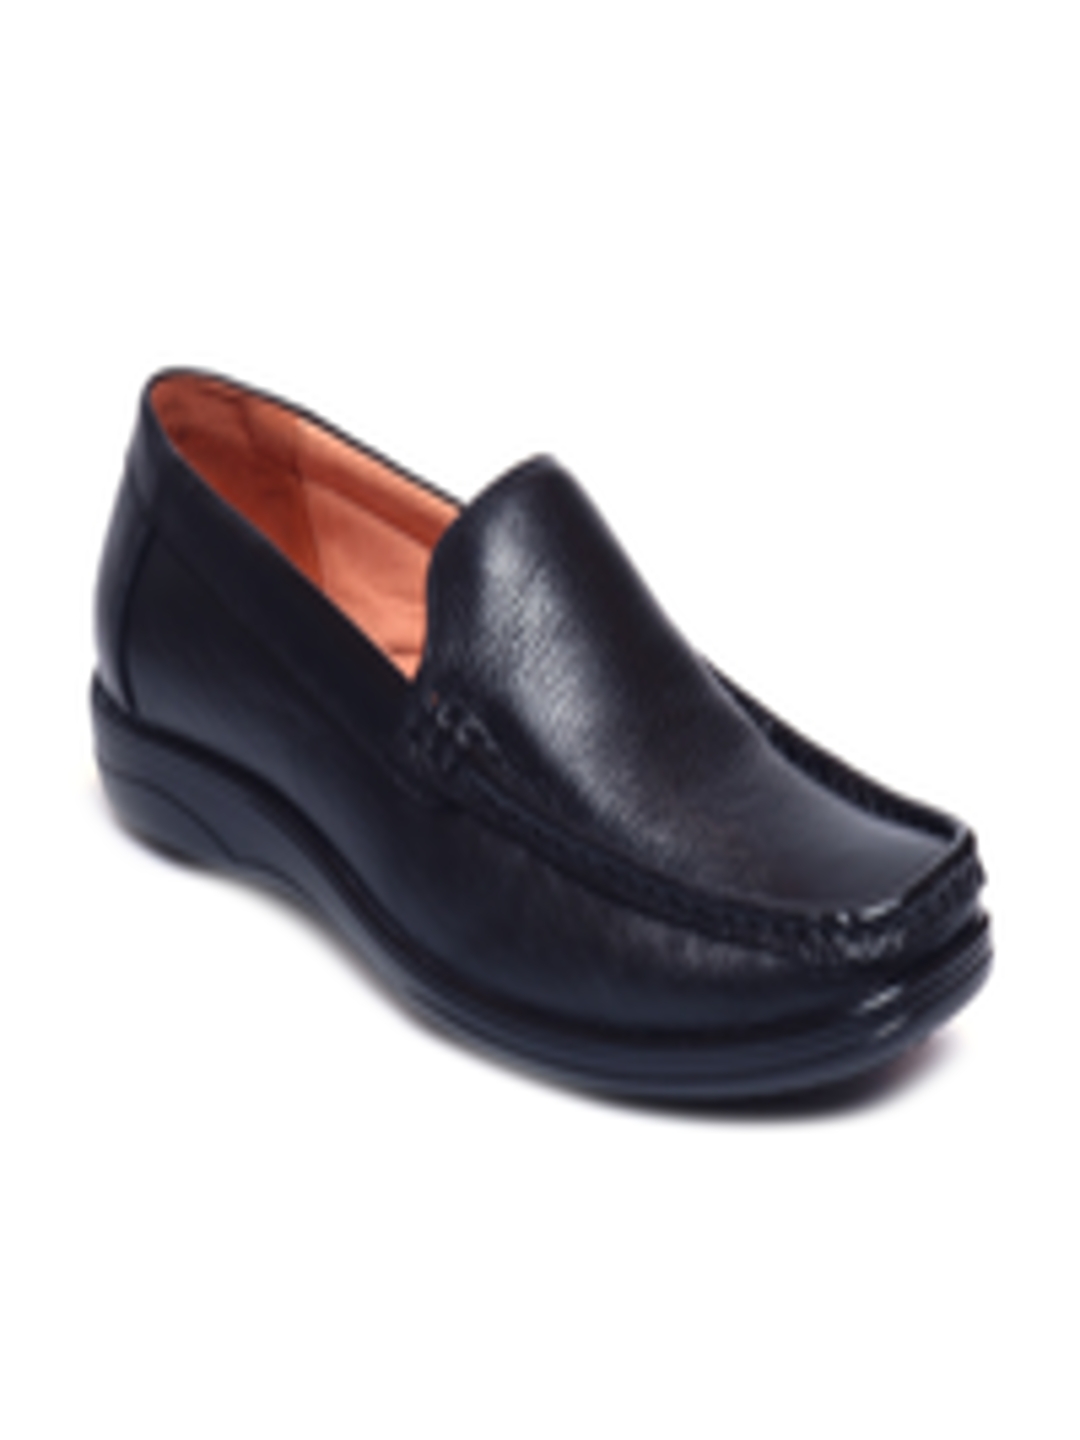 Buy Zoom Shoes Men Black Solid Leather Formal Loafer - Formal Shoes for ...